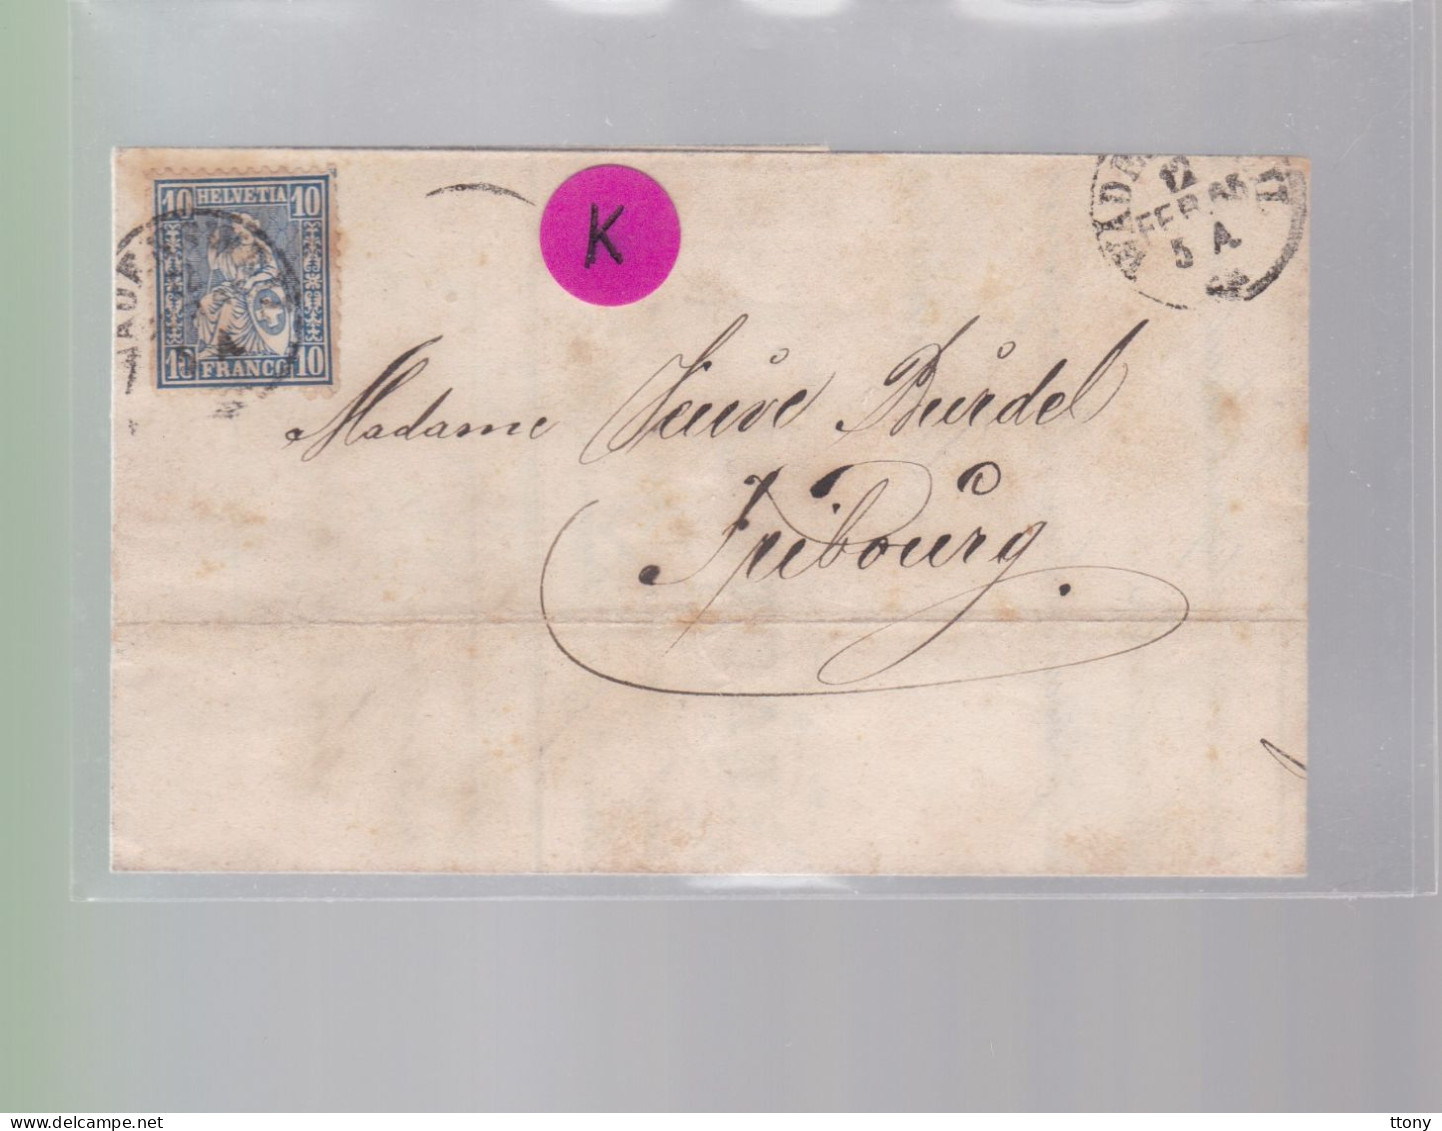 Un Timbre N° 31  10 C  Franco  Suisse  Sur Lettre   Facture  Wadenschweil    Février  1865   Destination Fribourg - Briefe U. Dokumente